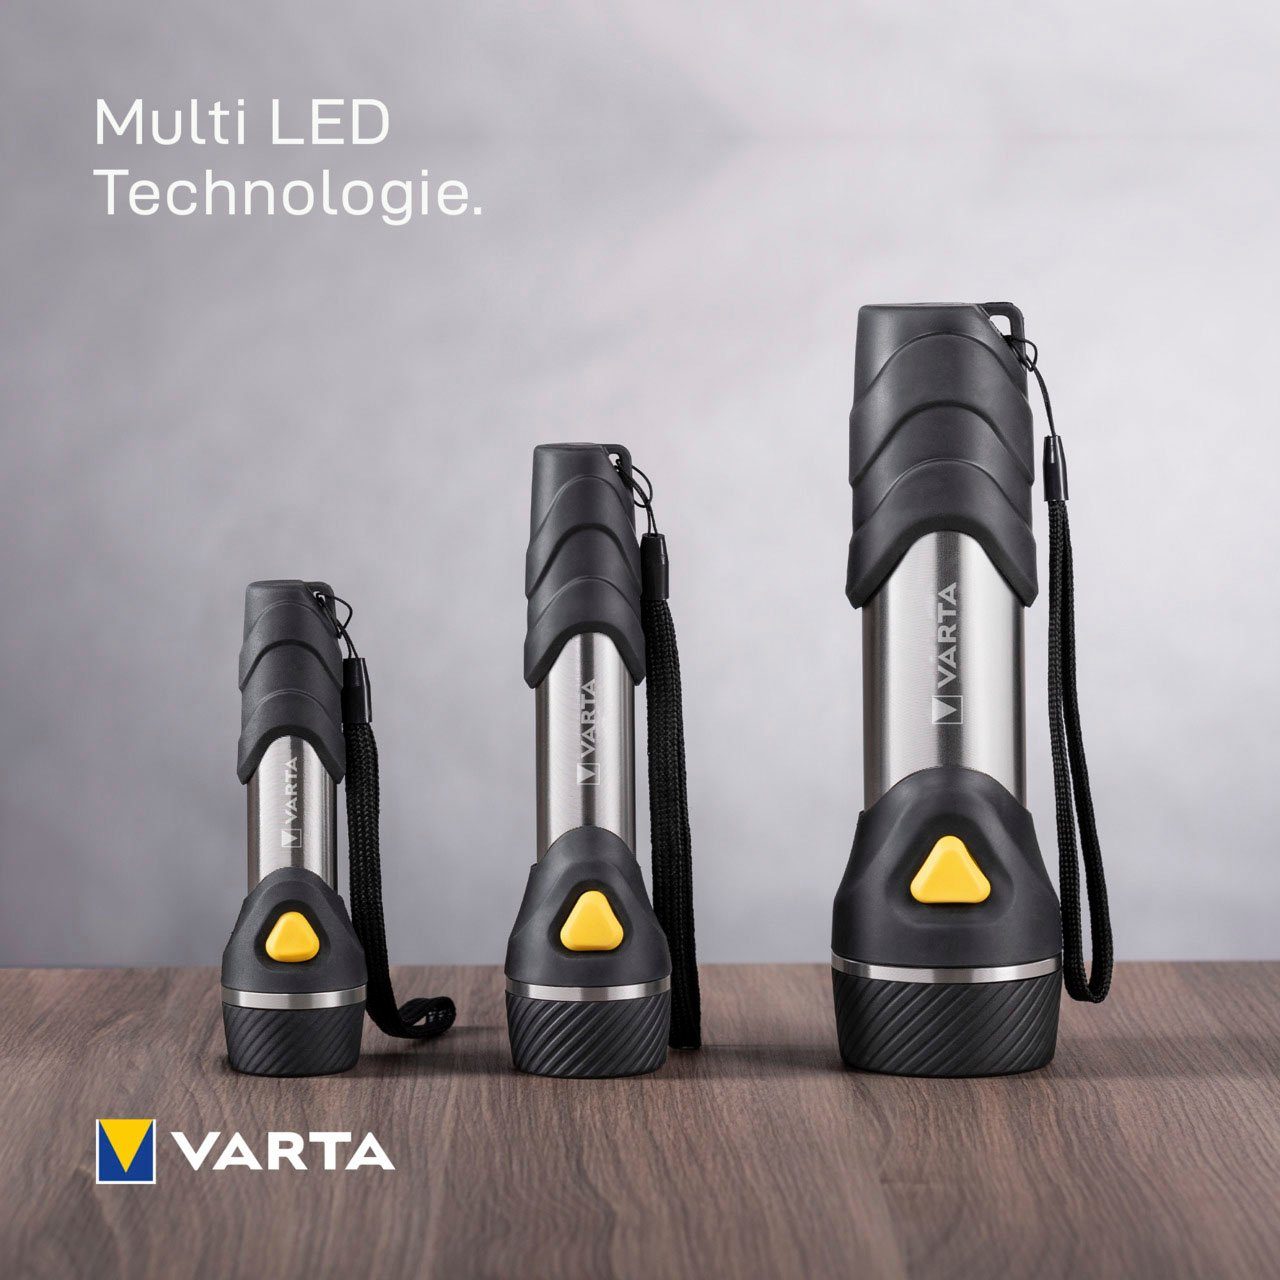 VARTA Handleuchte 9 Multi Taschenlampe LEDs LIGHT LED Light MULTI LED VARTA TASCHENLAMPE DAY F20 F20 VARTA mit Day